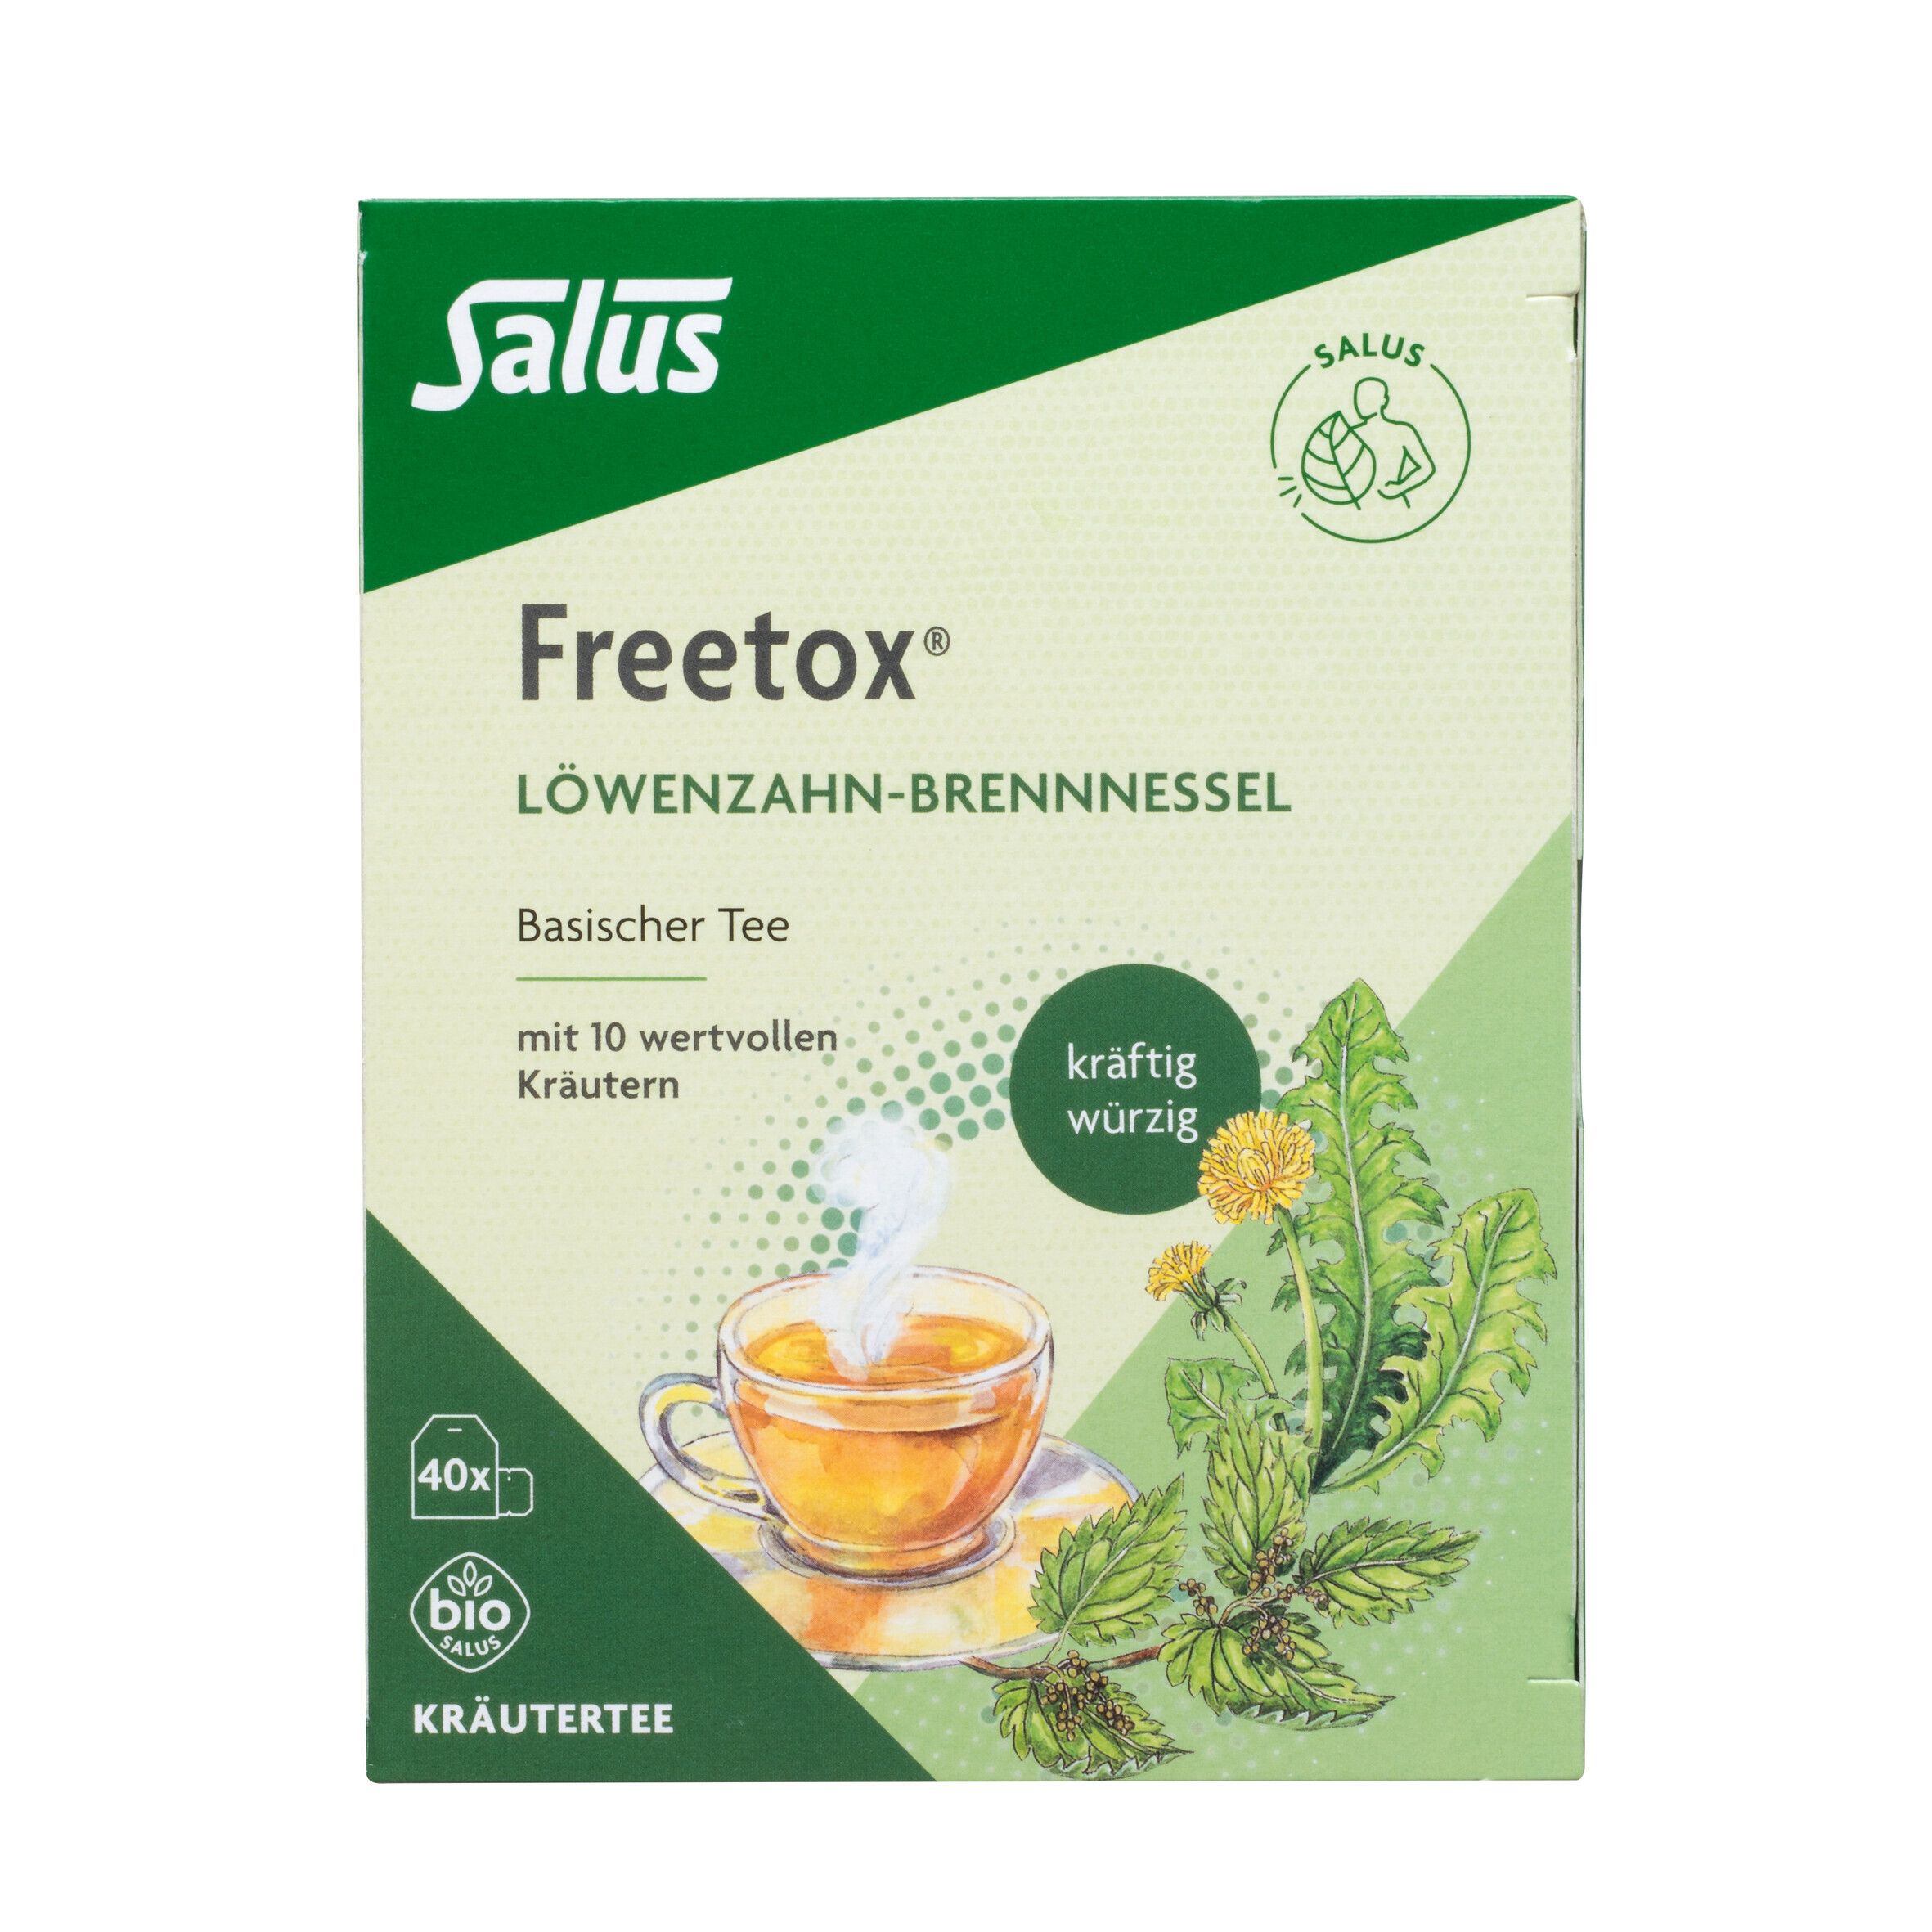 Salus® Freetox® Löwenzahn-Brennnessel Tee